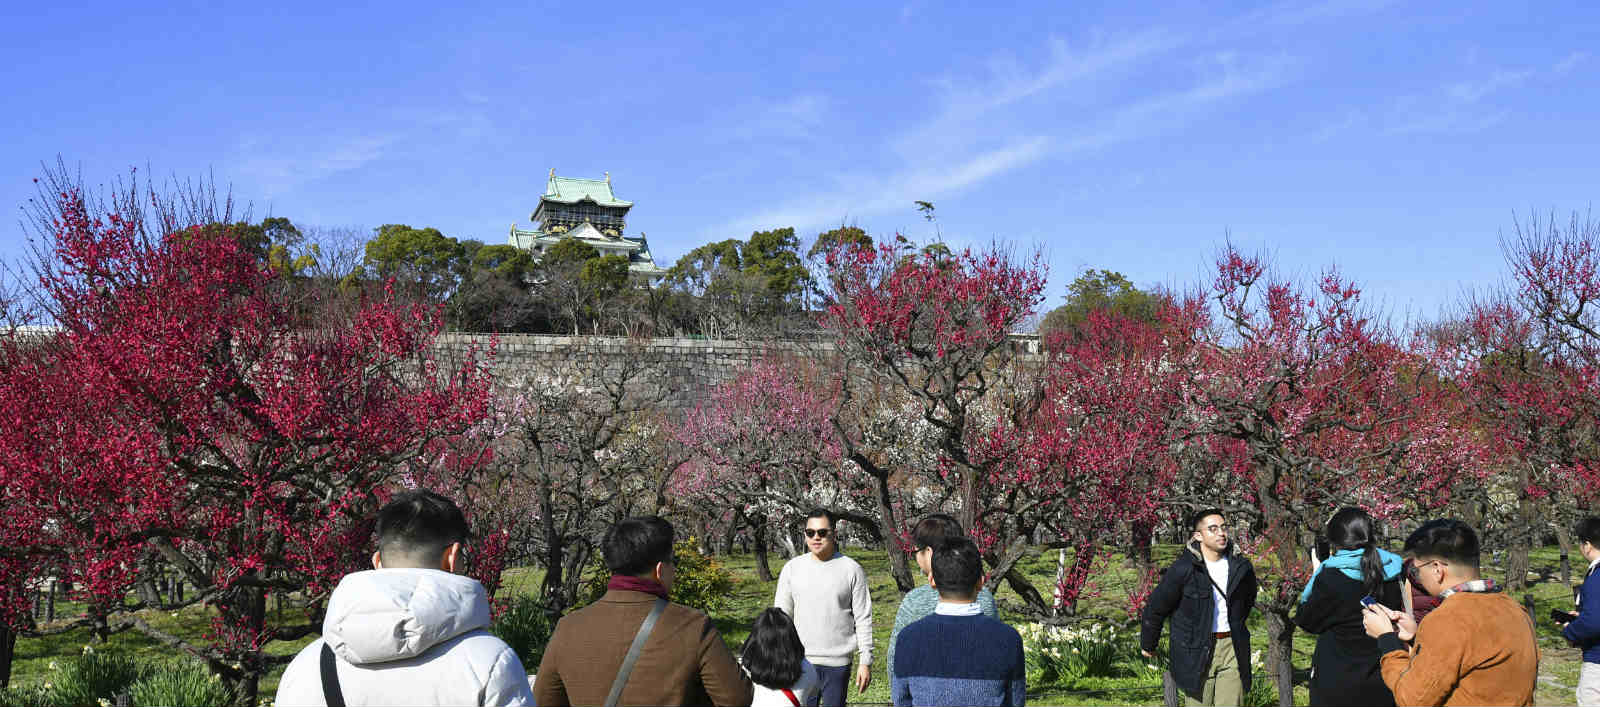 日本大阪城公园梅花盛放 吸引游人驻足观赏 图片